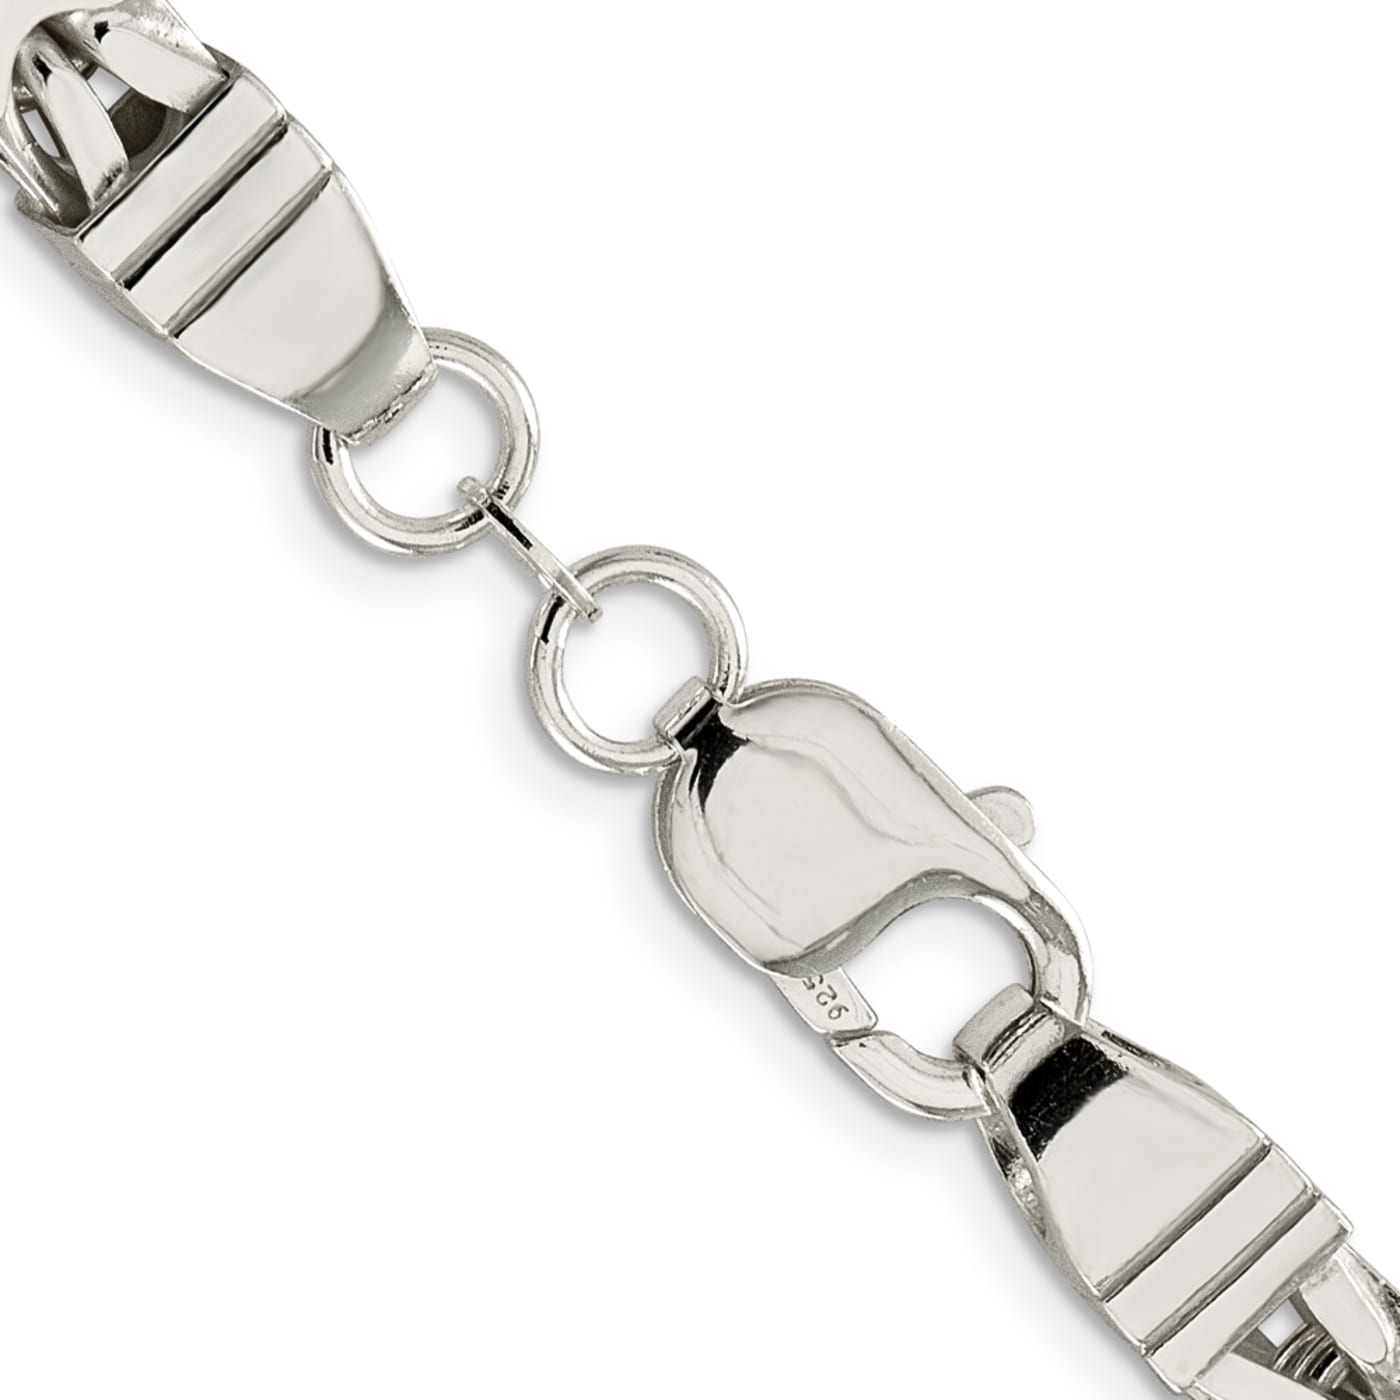 Women's Sterling Silver Byzantine Chain Bracelet (7.5)